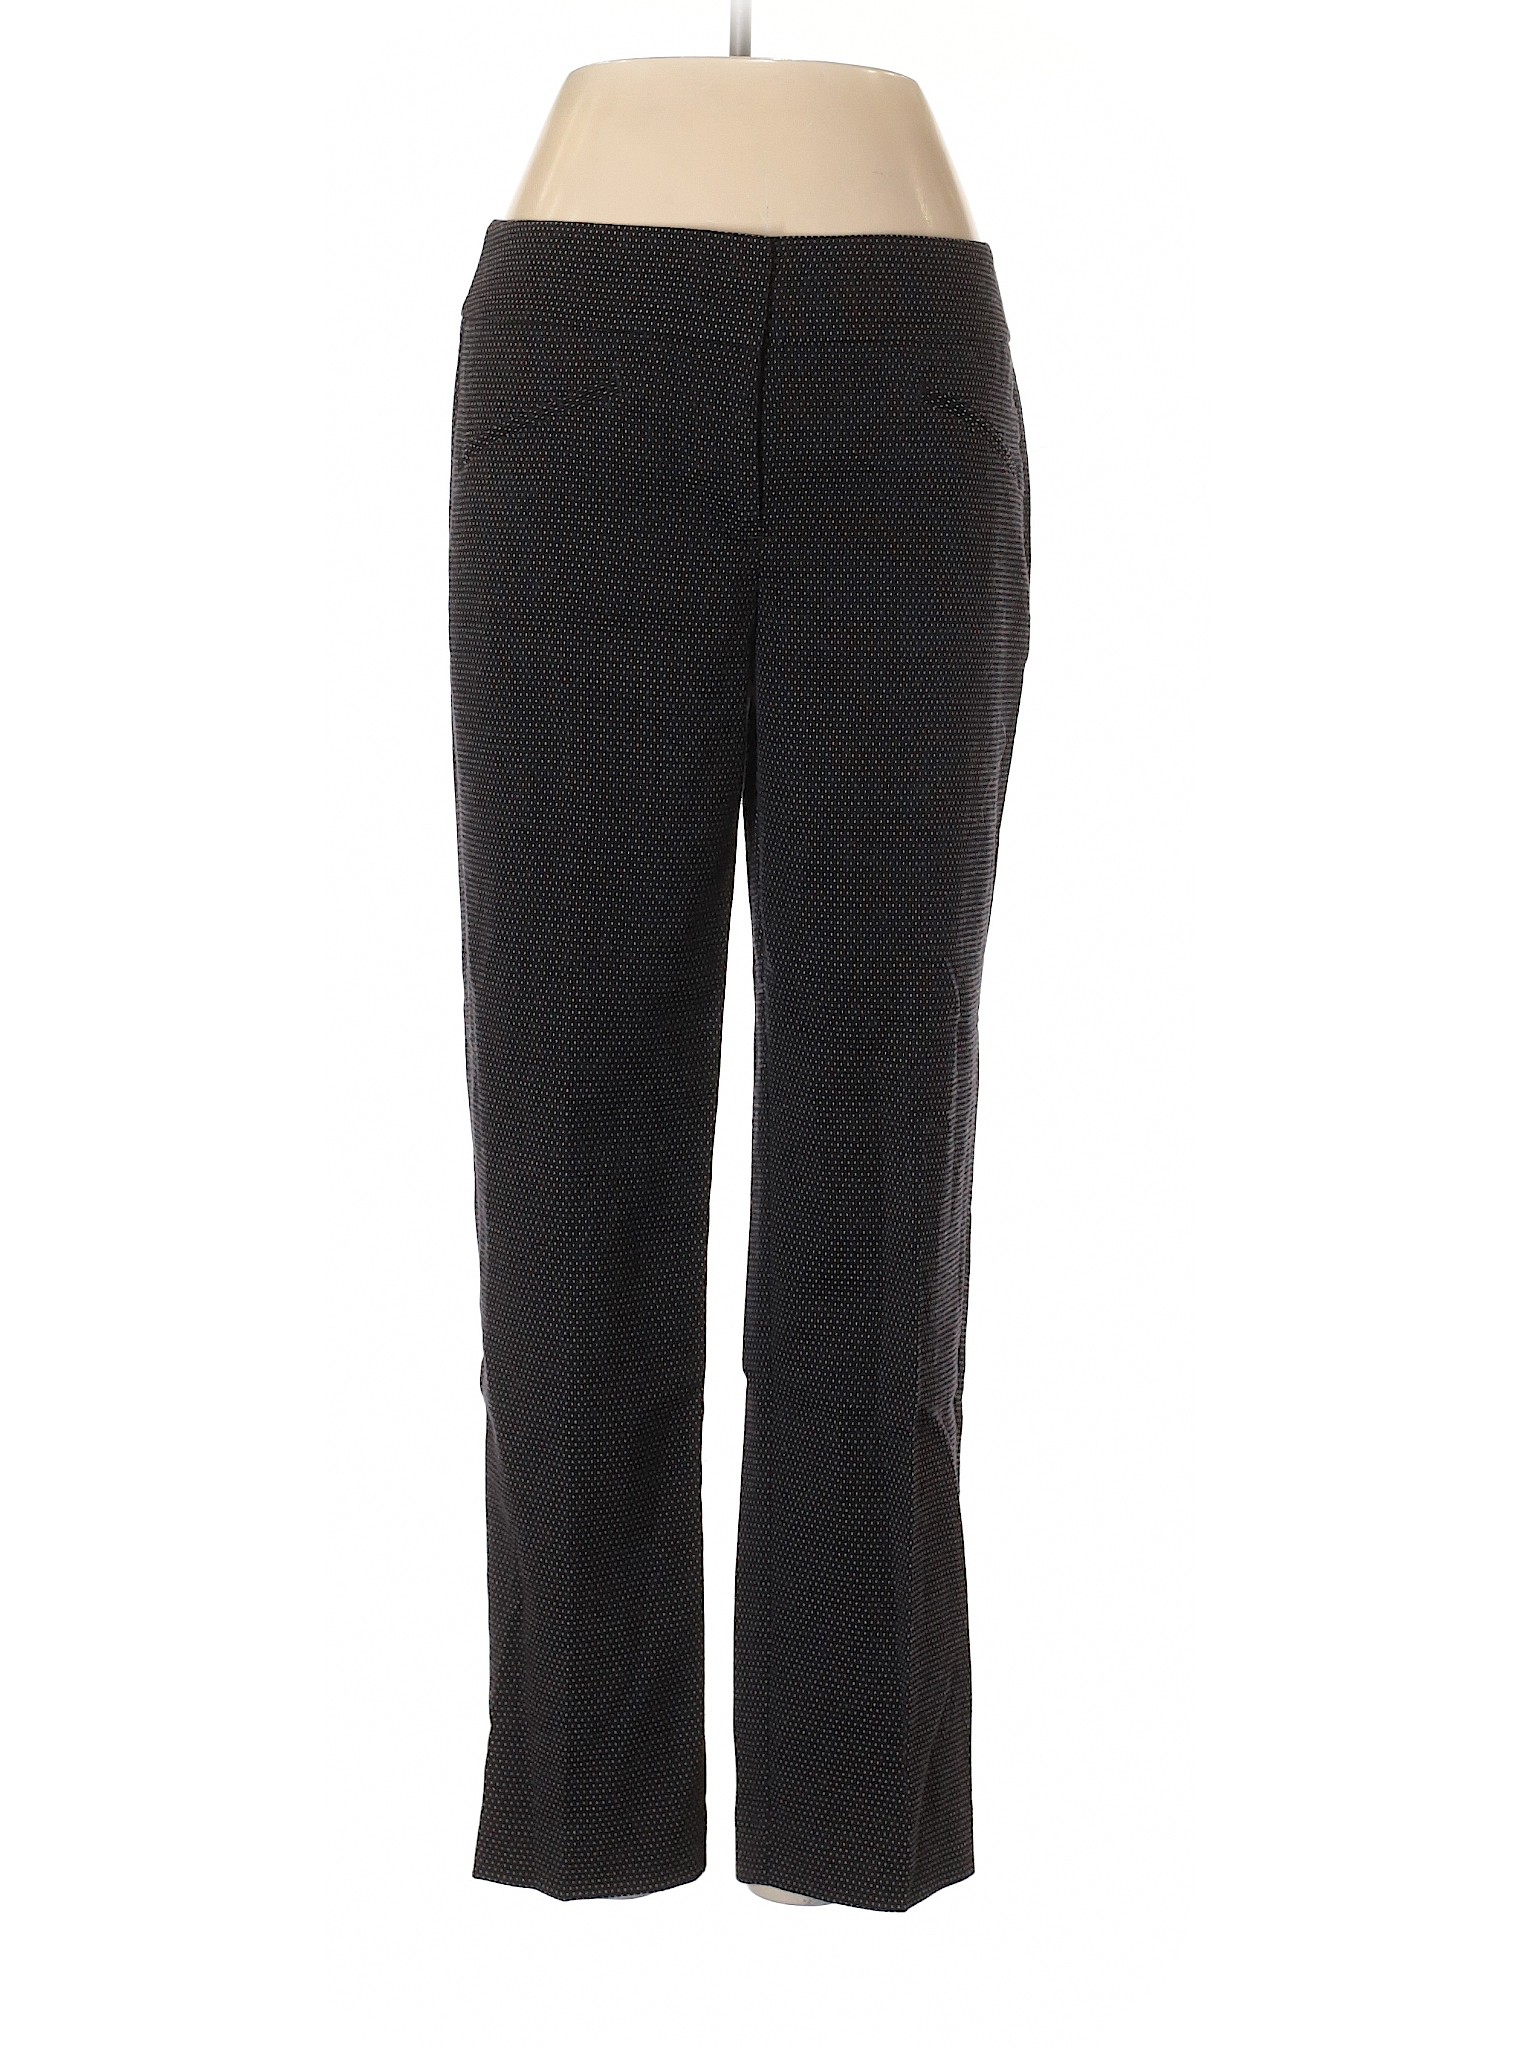 Ann Taylor Factory Women Black Dress Pants 2 | eBay